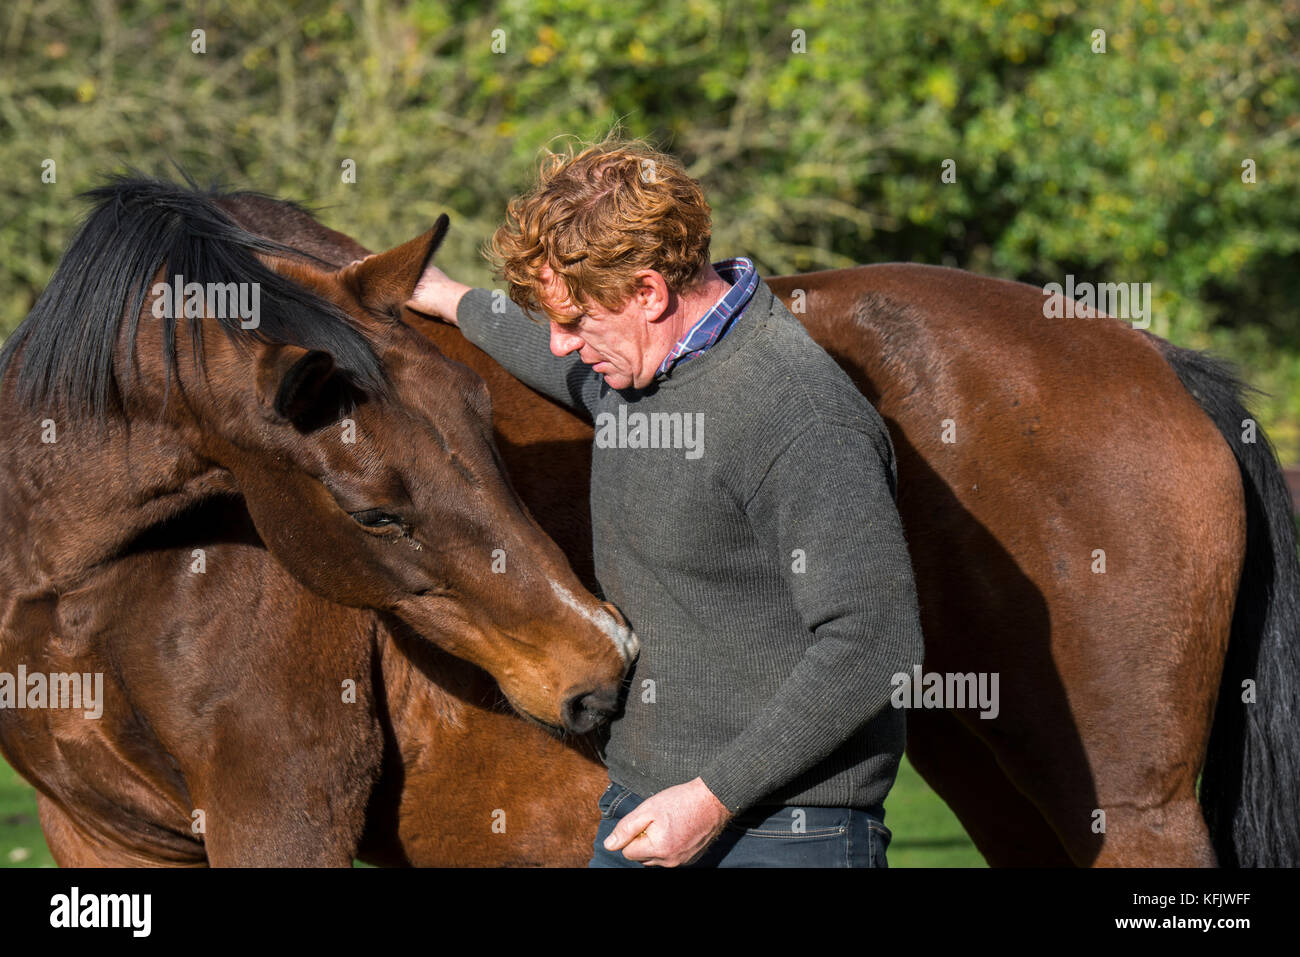 Cheval warmblood belge de l'équitation naturelle cheval whisperer / praticienne qui travaille à l'extérieur dans le champ Banque D'Images